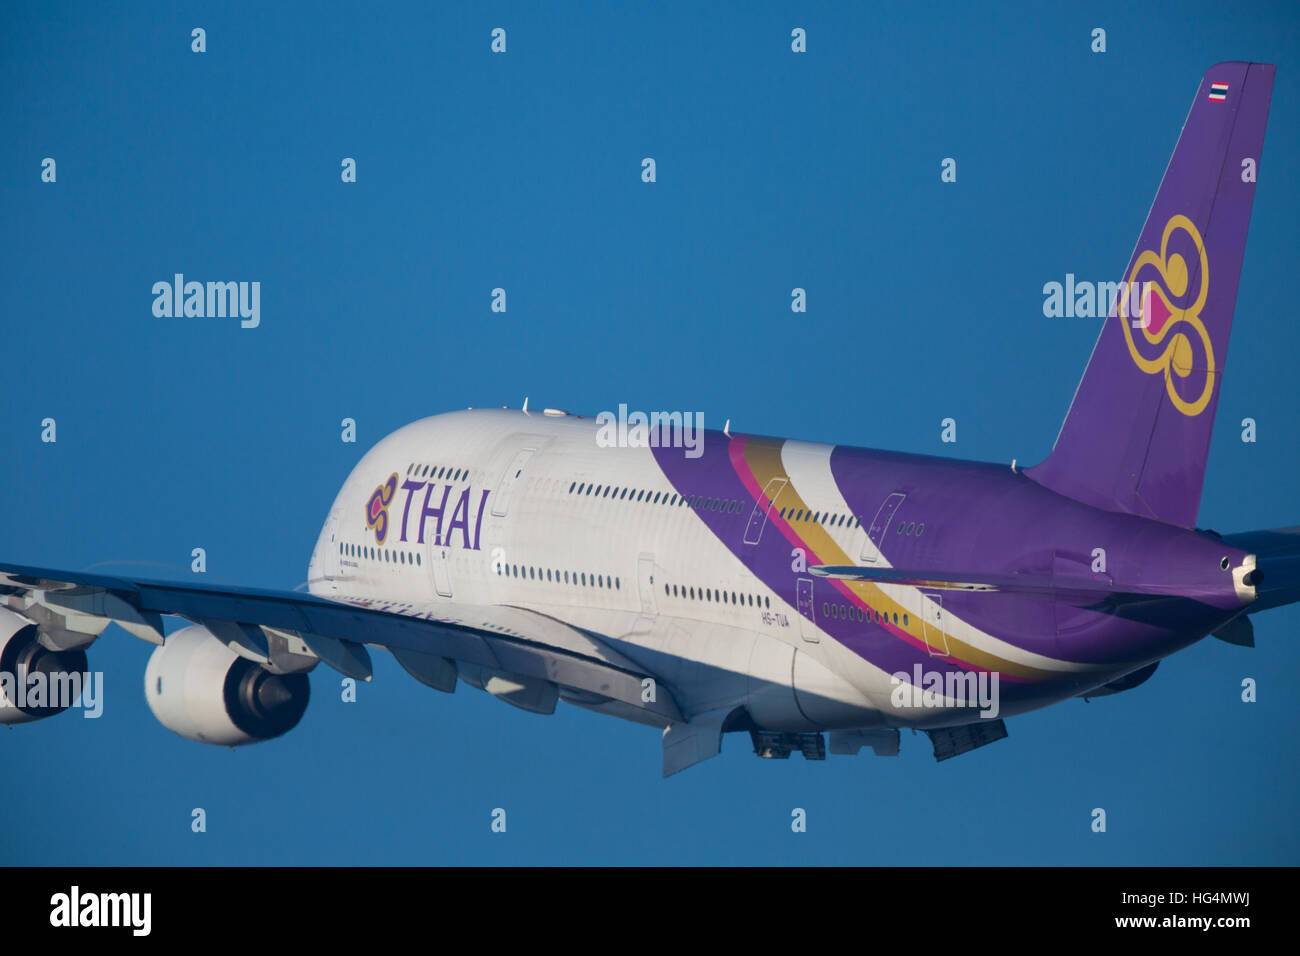 Thai Airways Airbus A380 Aircraft Stock Photo